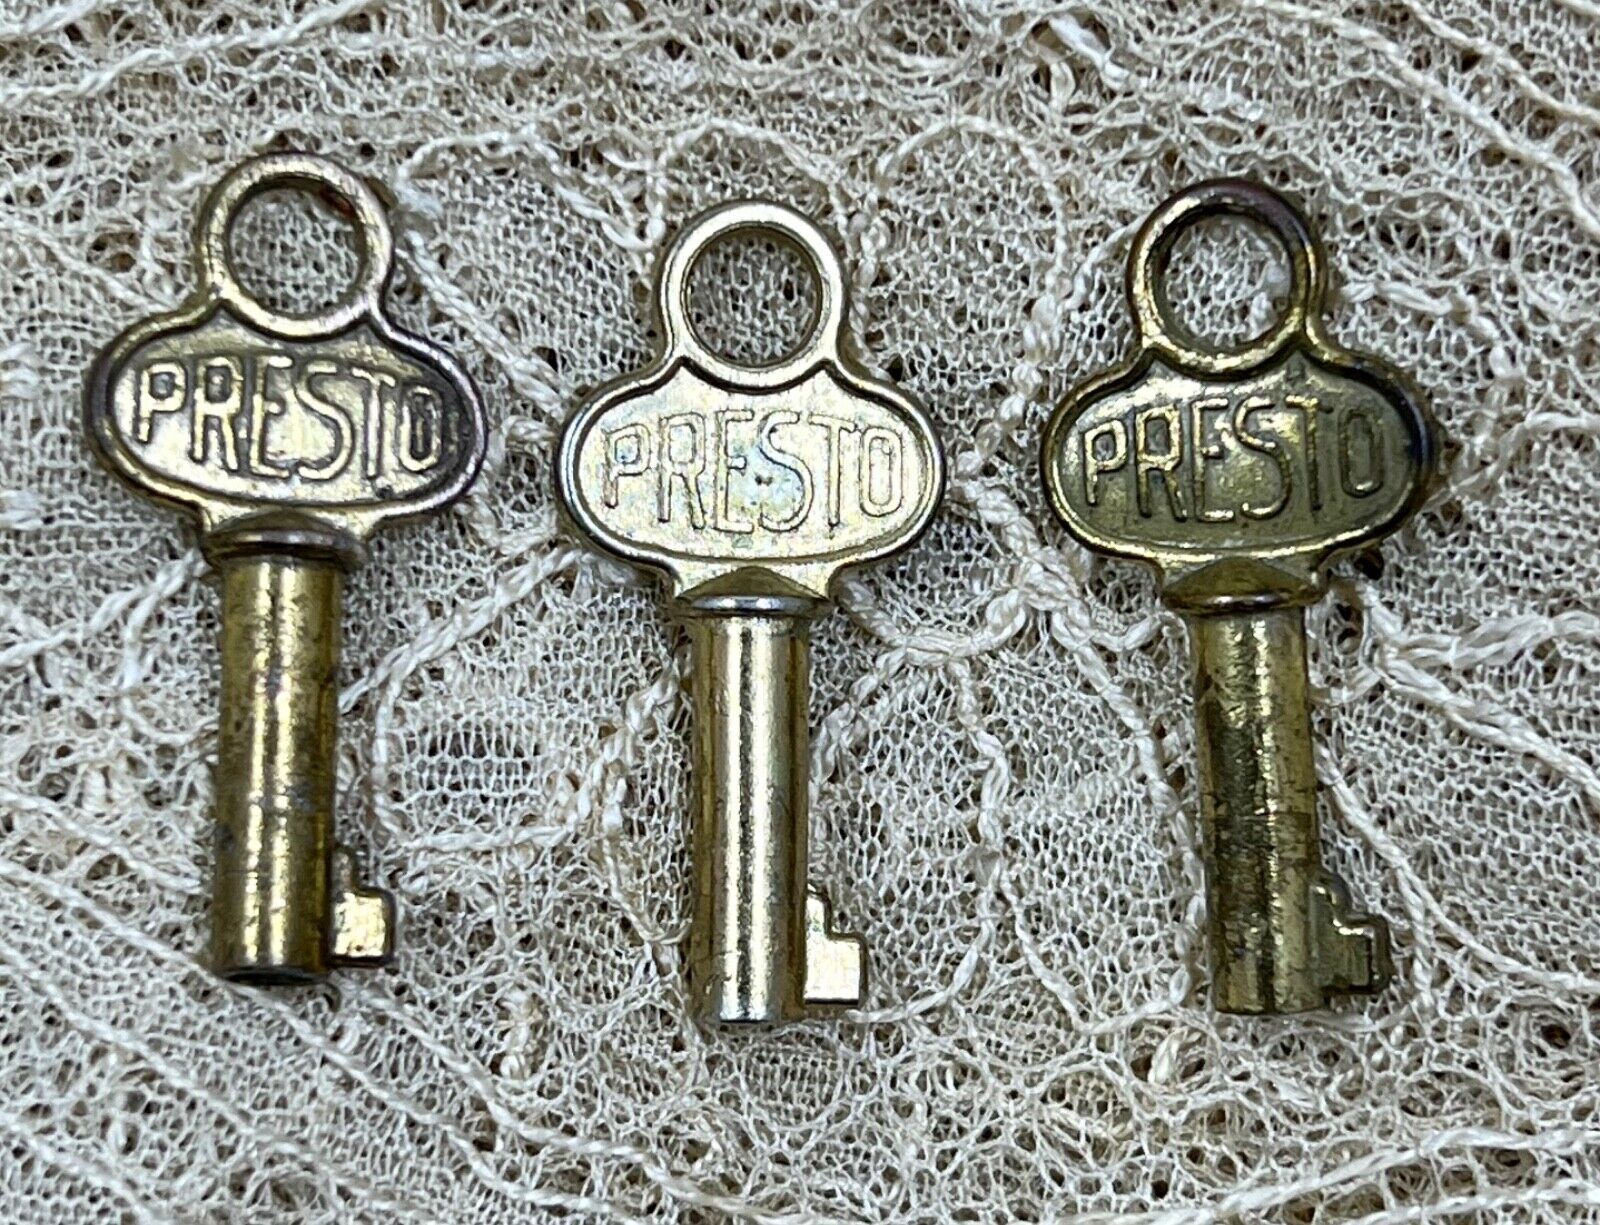 Small Presto Vintage Hollow Barrel Keys, Lot Of 3, All Original, Brass Tone